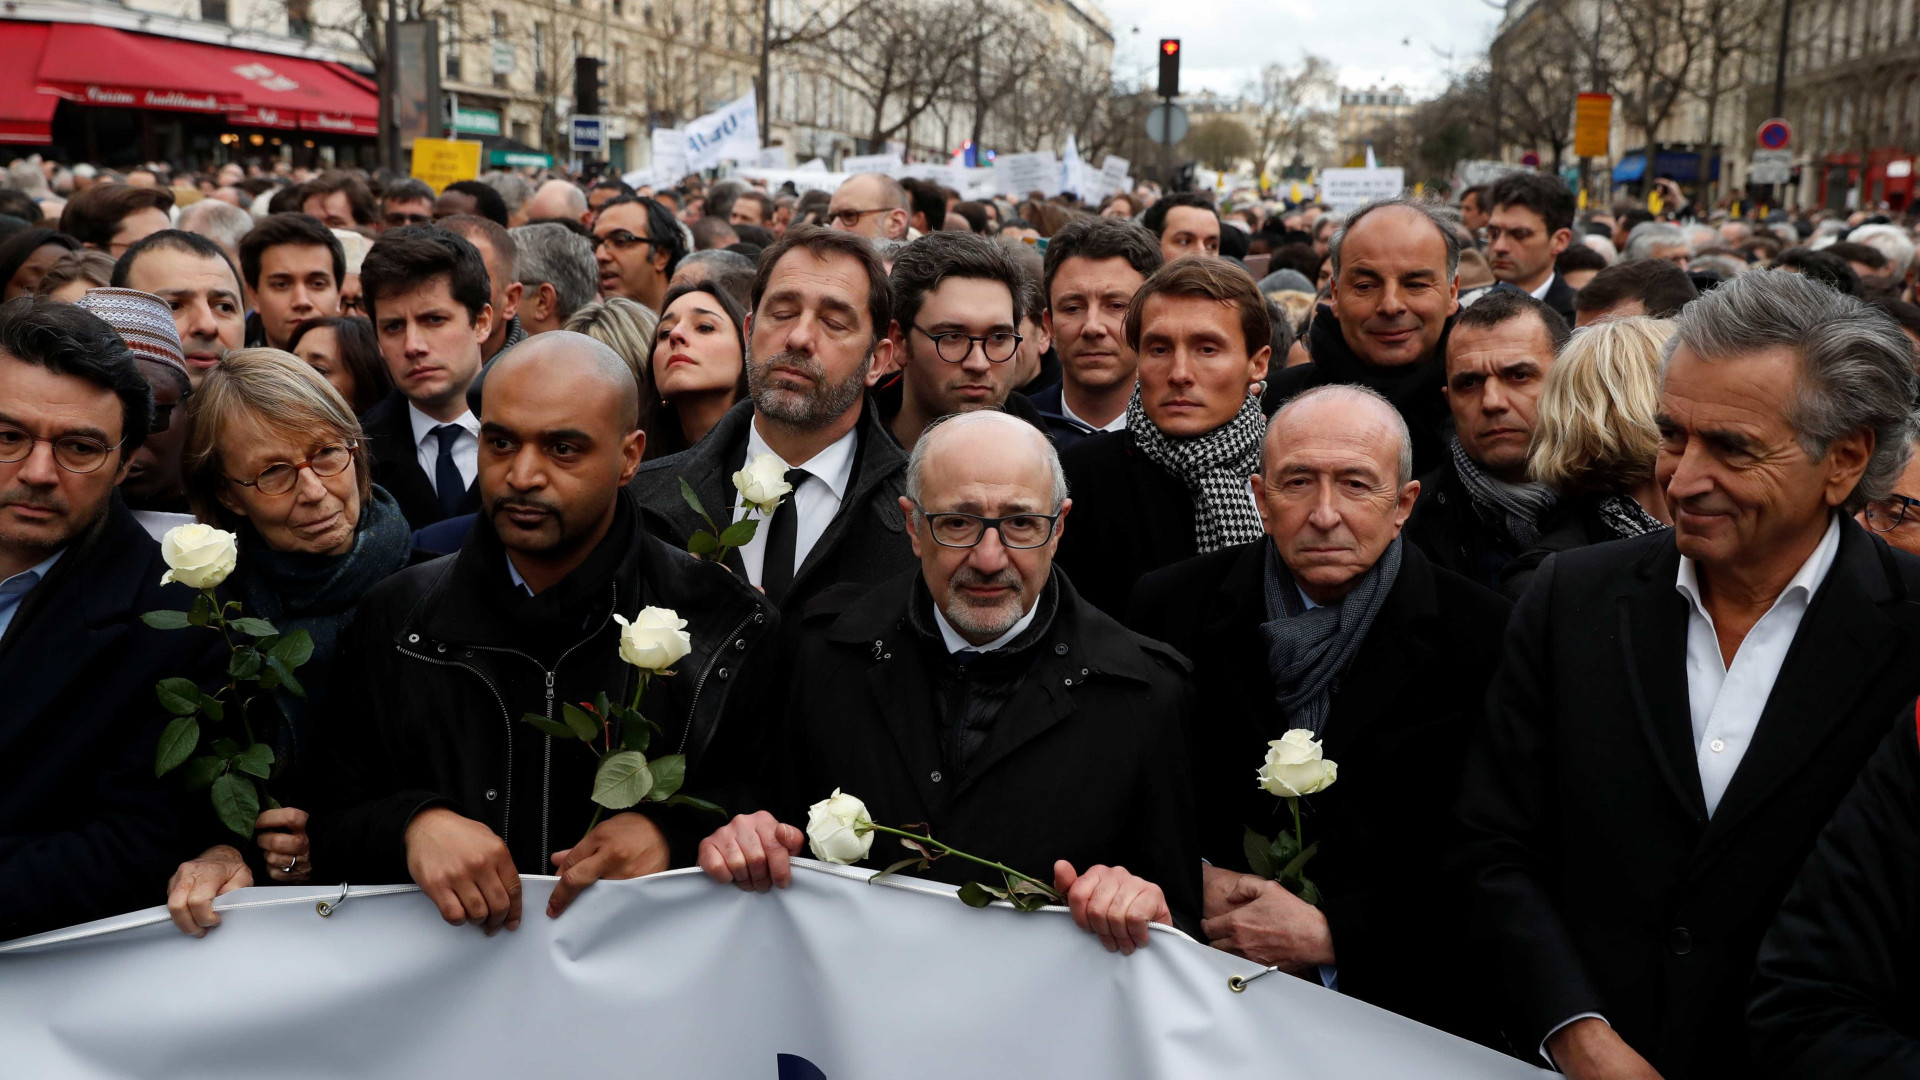 Enterro de judia assassinada expõe divisão da França